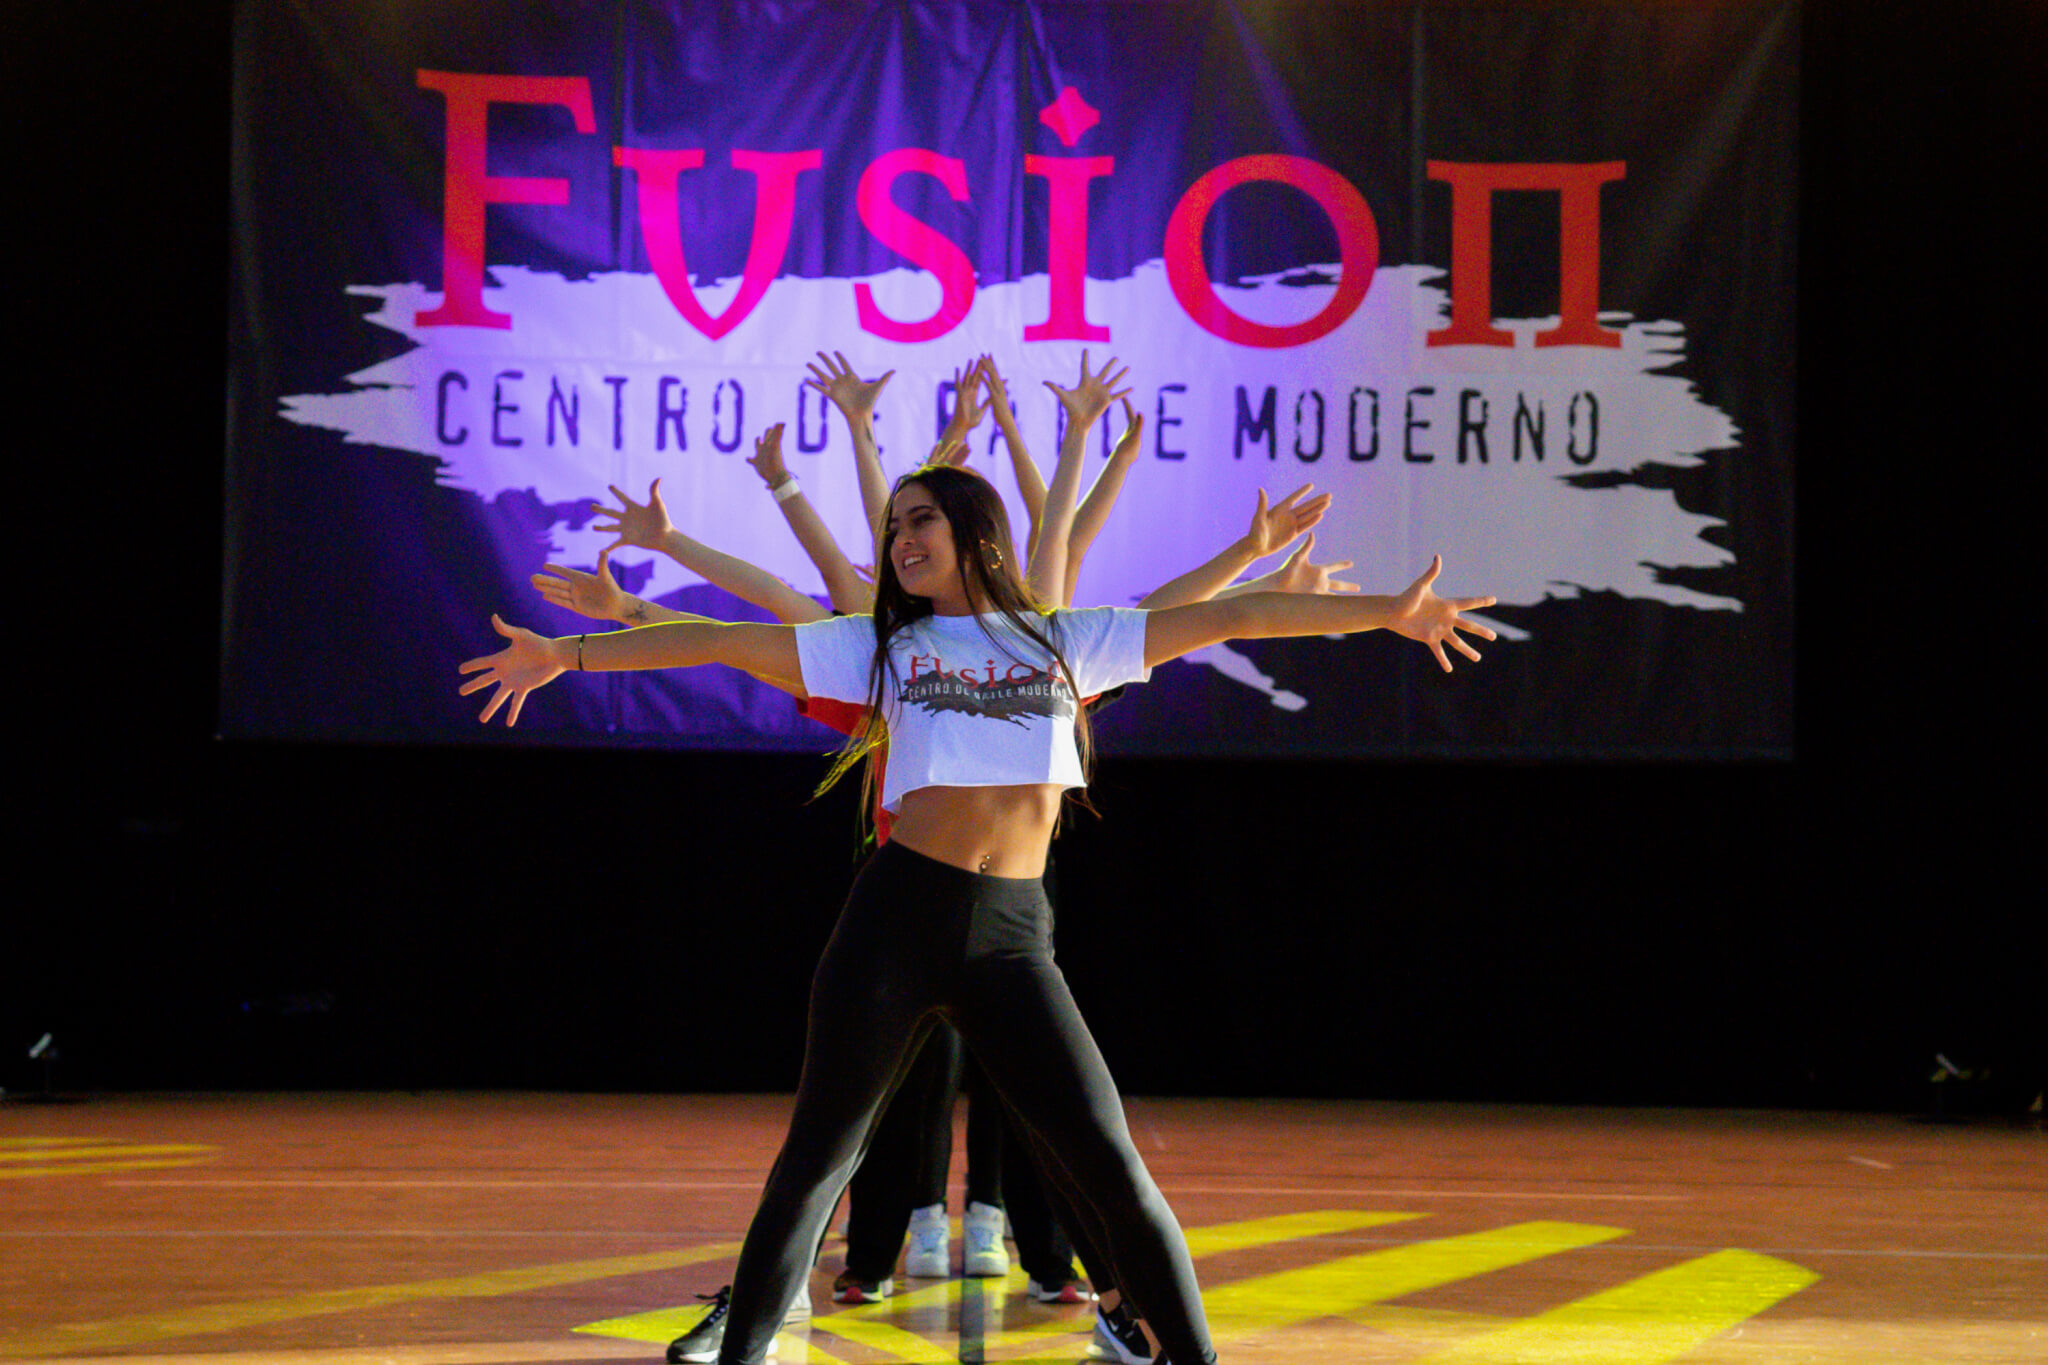 tirar a la basura Mil millones transfusión FUSION - Centro de baile moderno en Bilbao | Apuntate a bailar